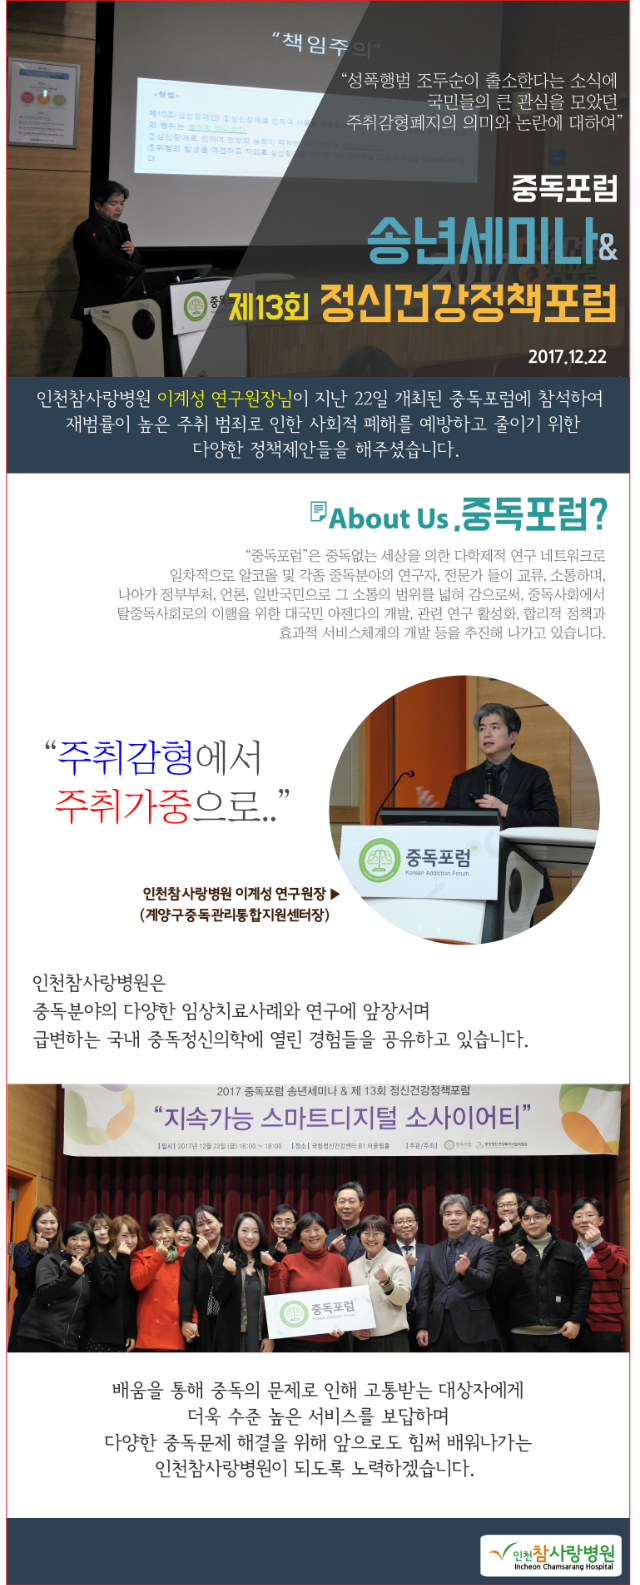 사본 -2018참사랑소식 1월-중독포럼(이계성원장님).png